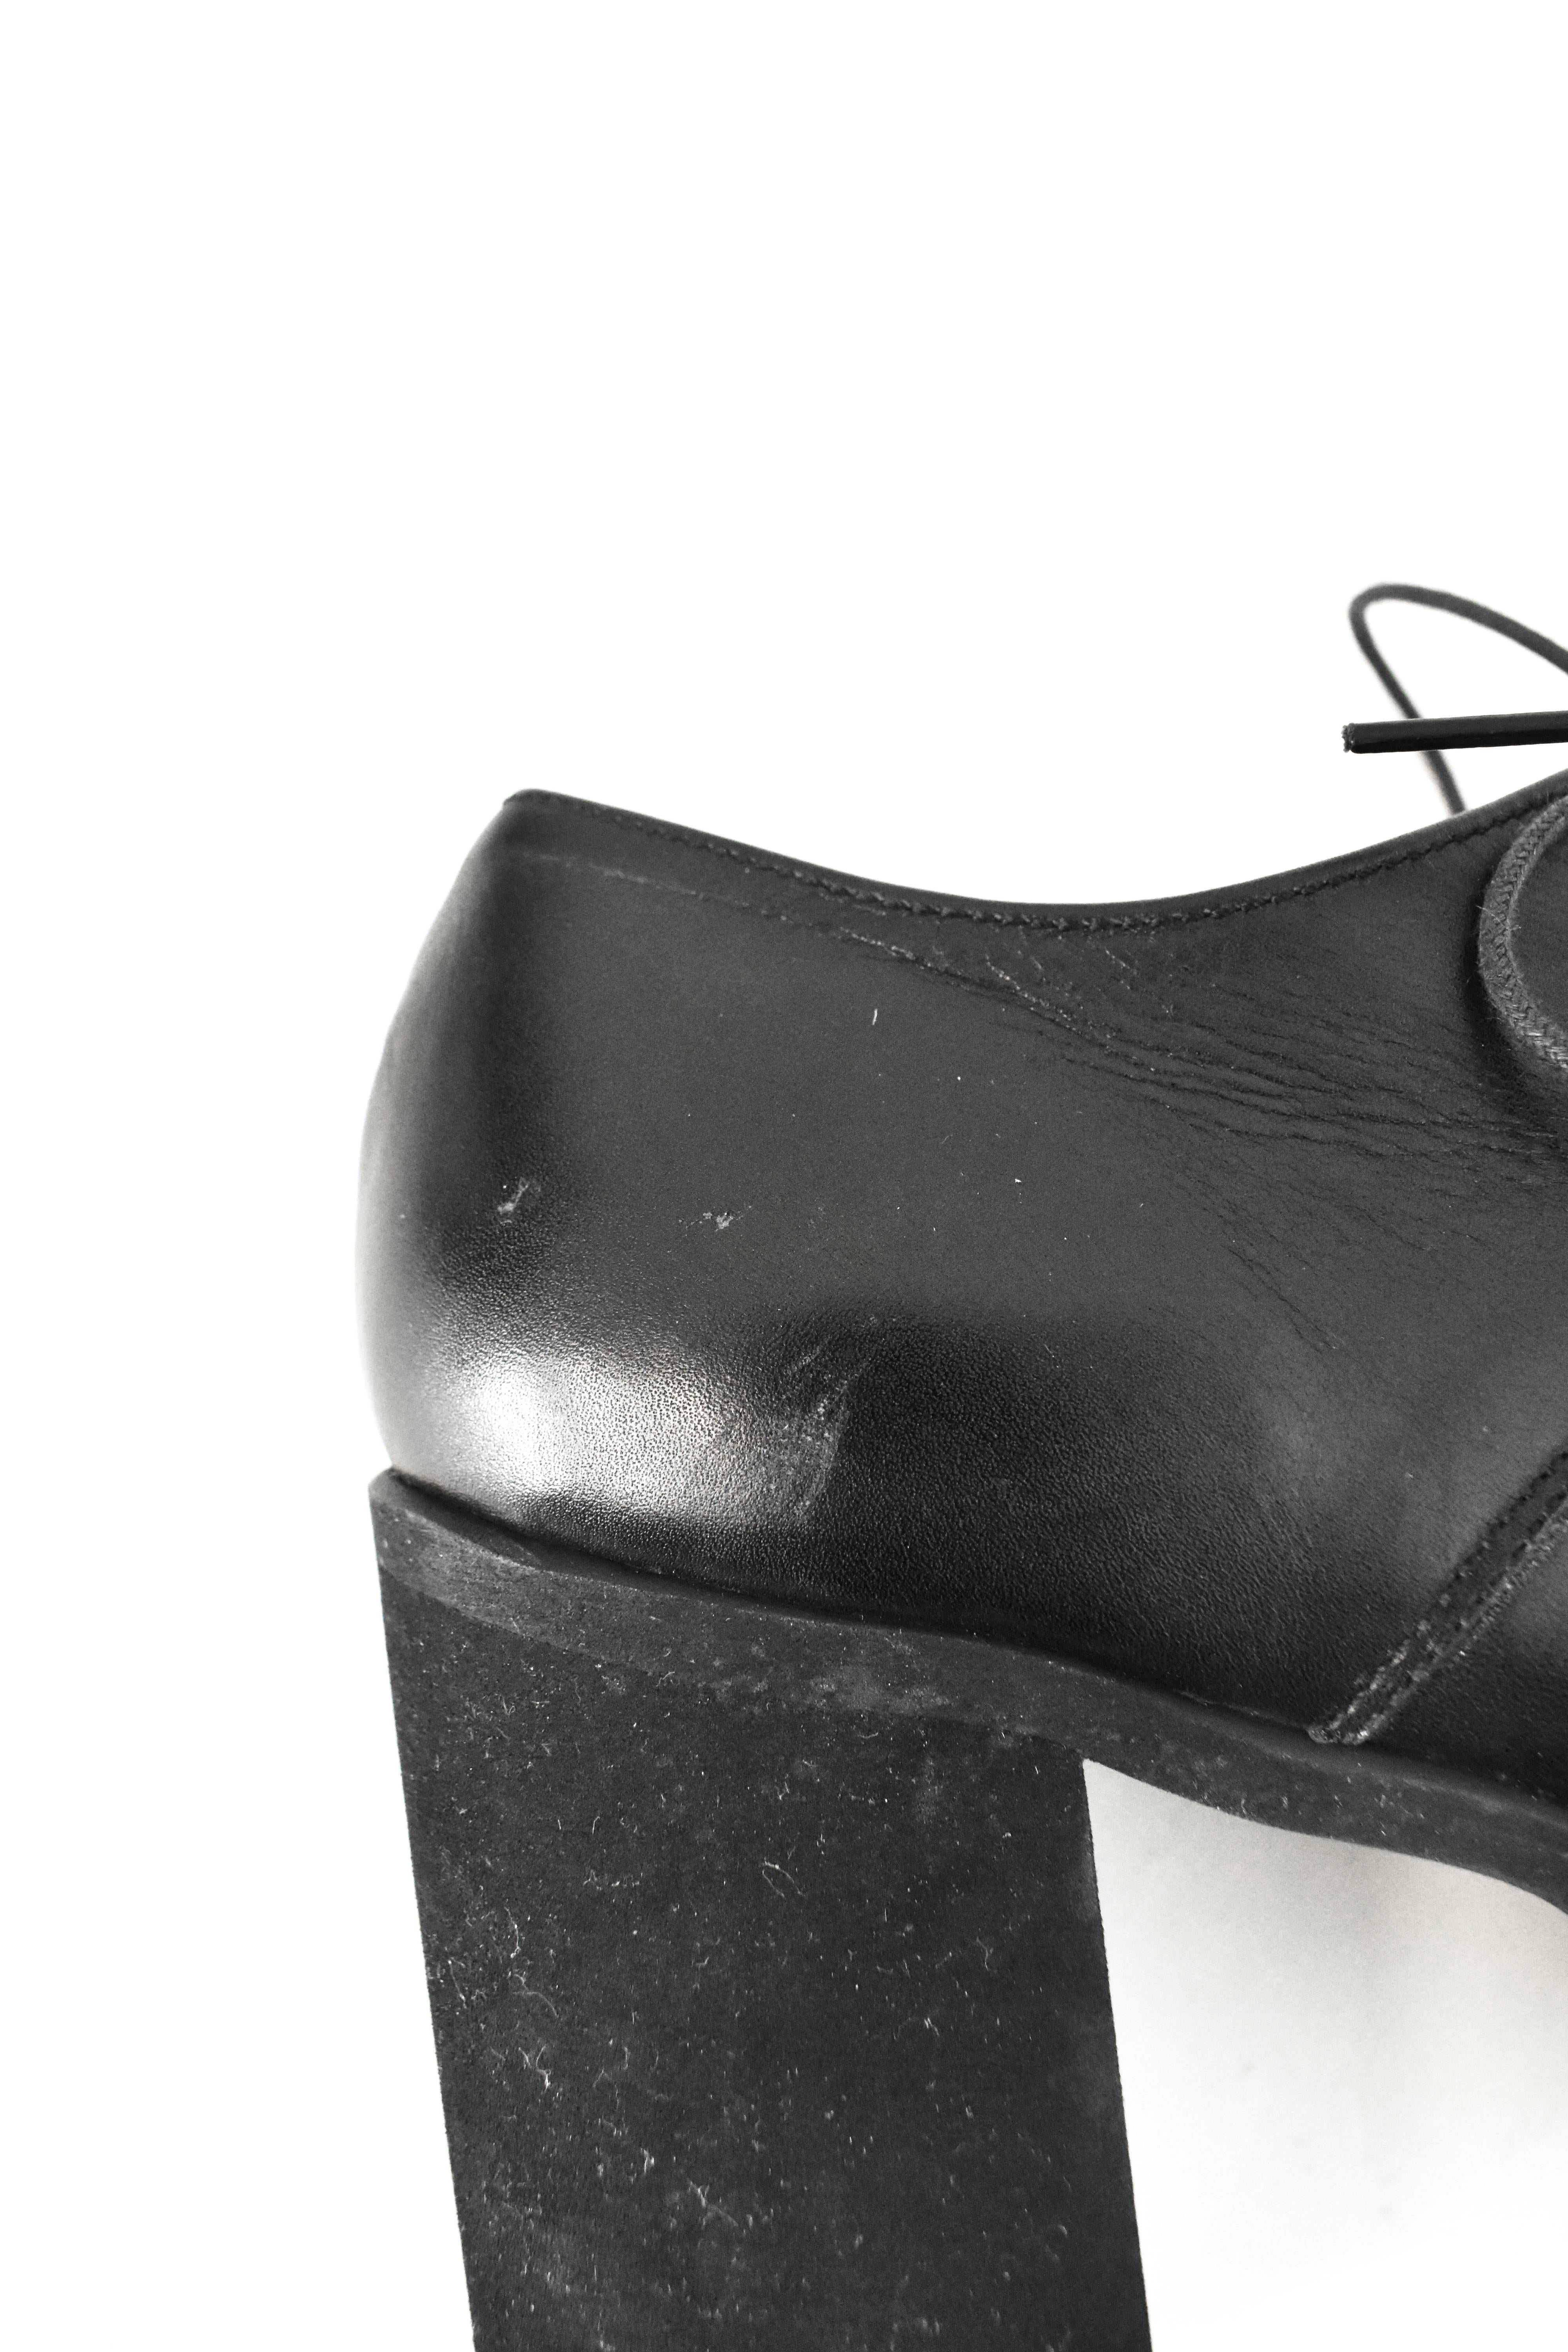 Yohji Yamamoto Black Platform Lace-Up Shoes 2